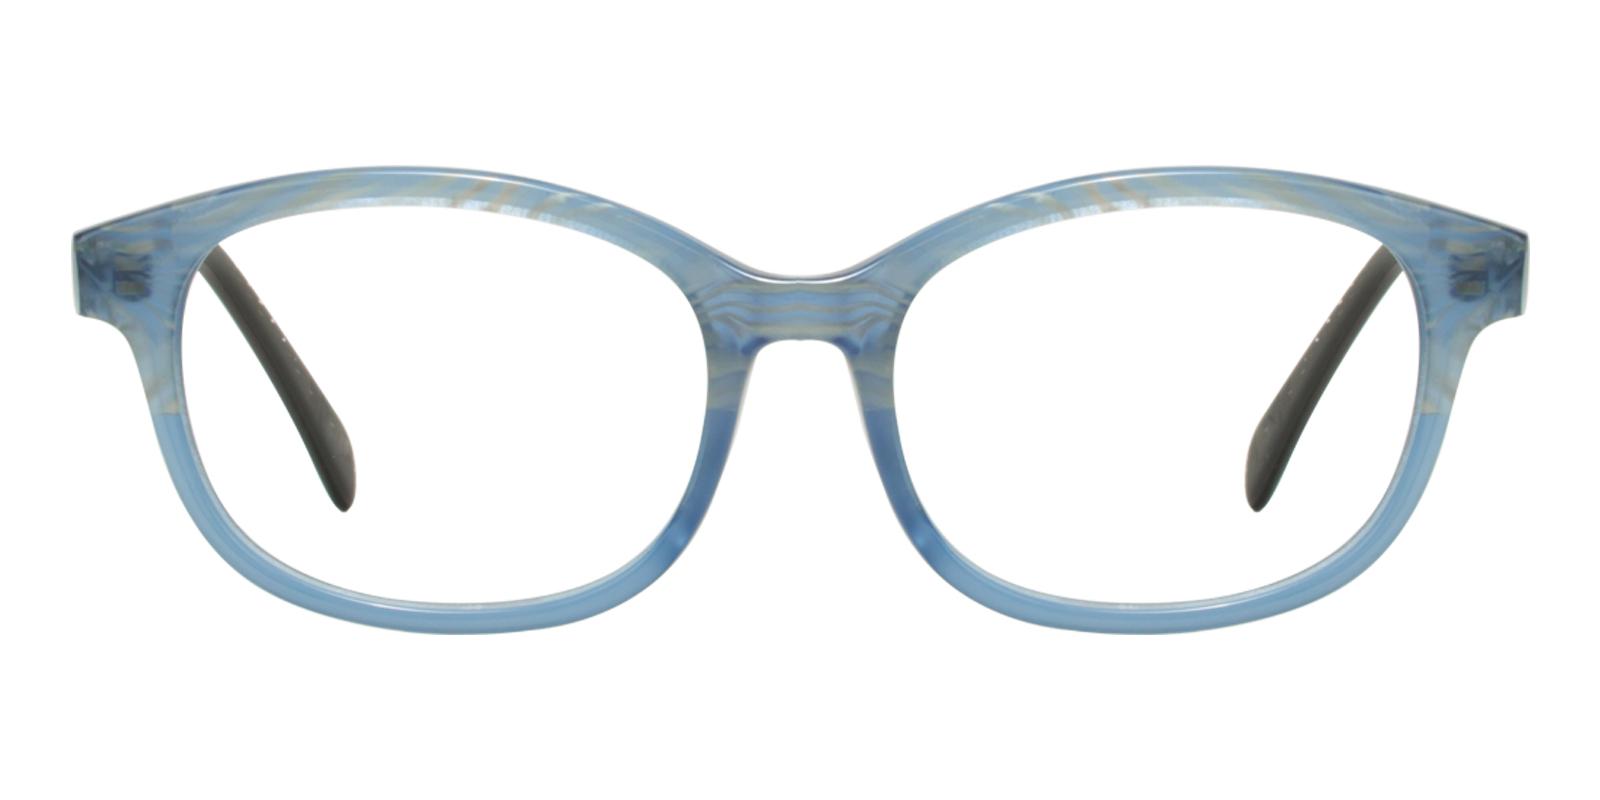 Plumer Blue Acetate Eyeglasses , UniversalBridgeFit Frames from ABBE Glasses